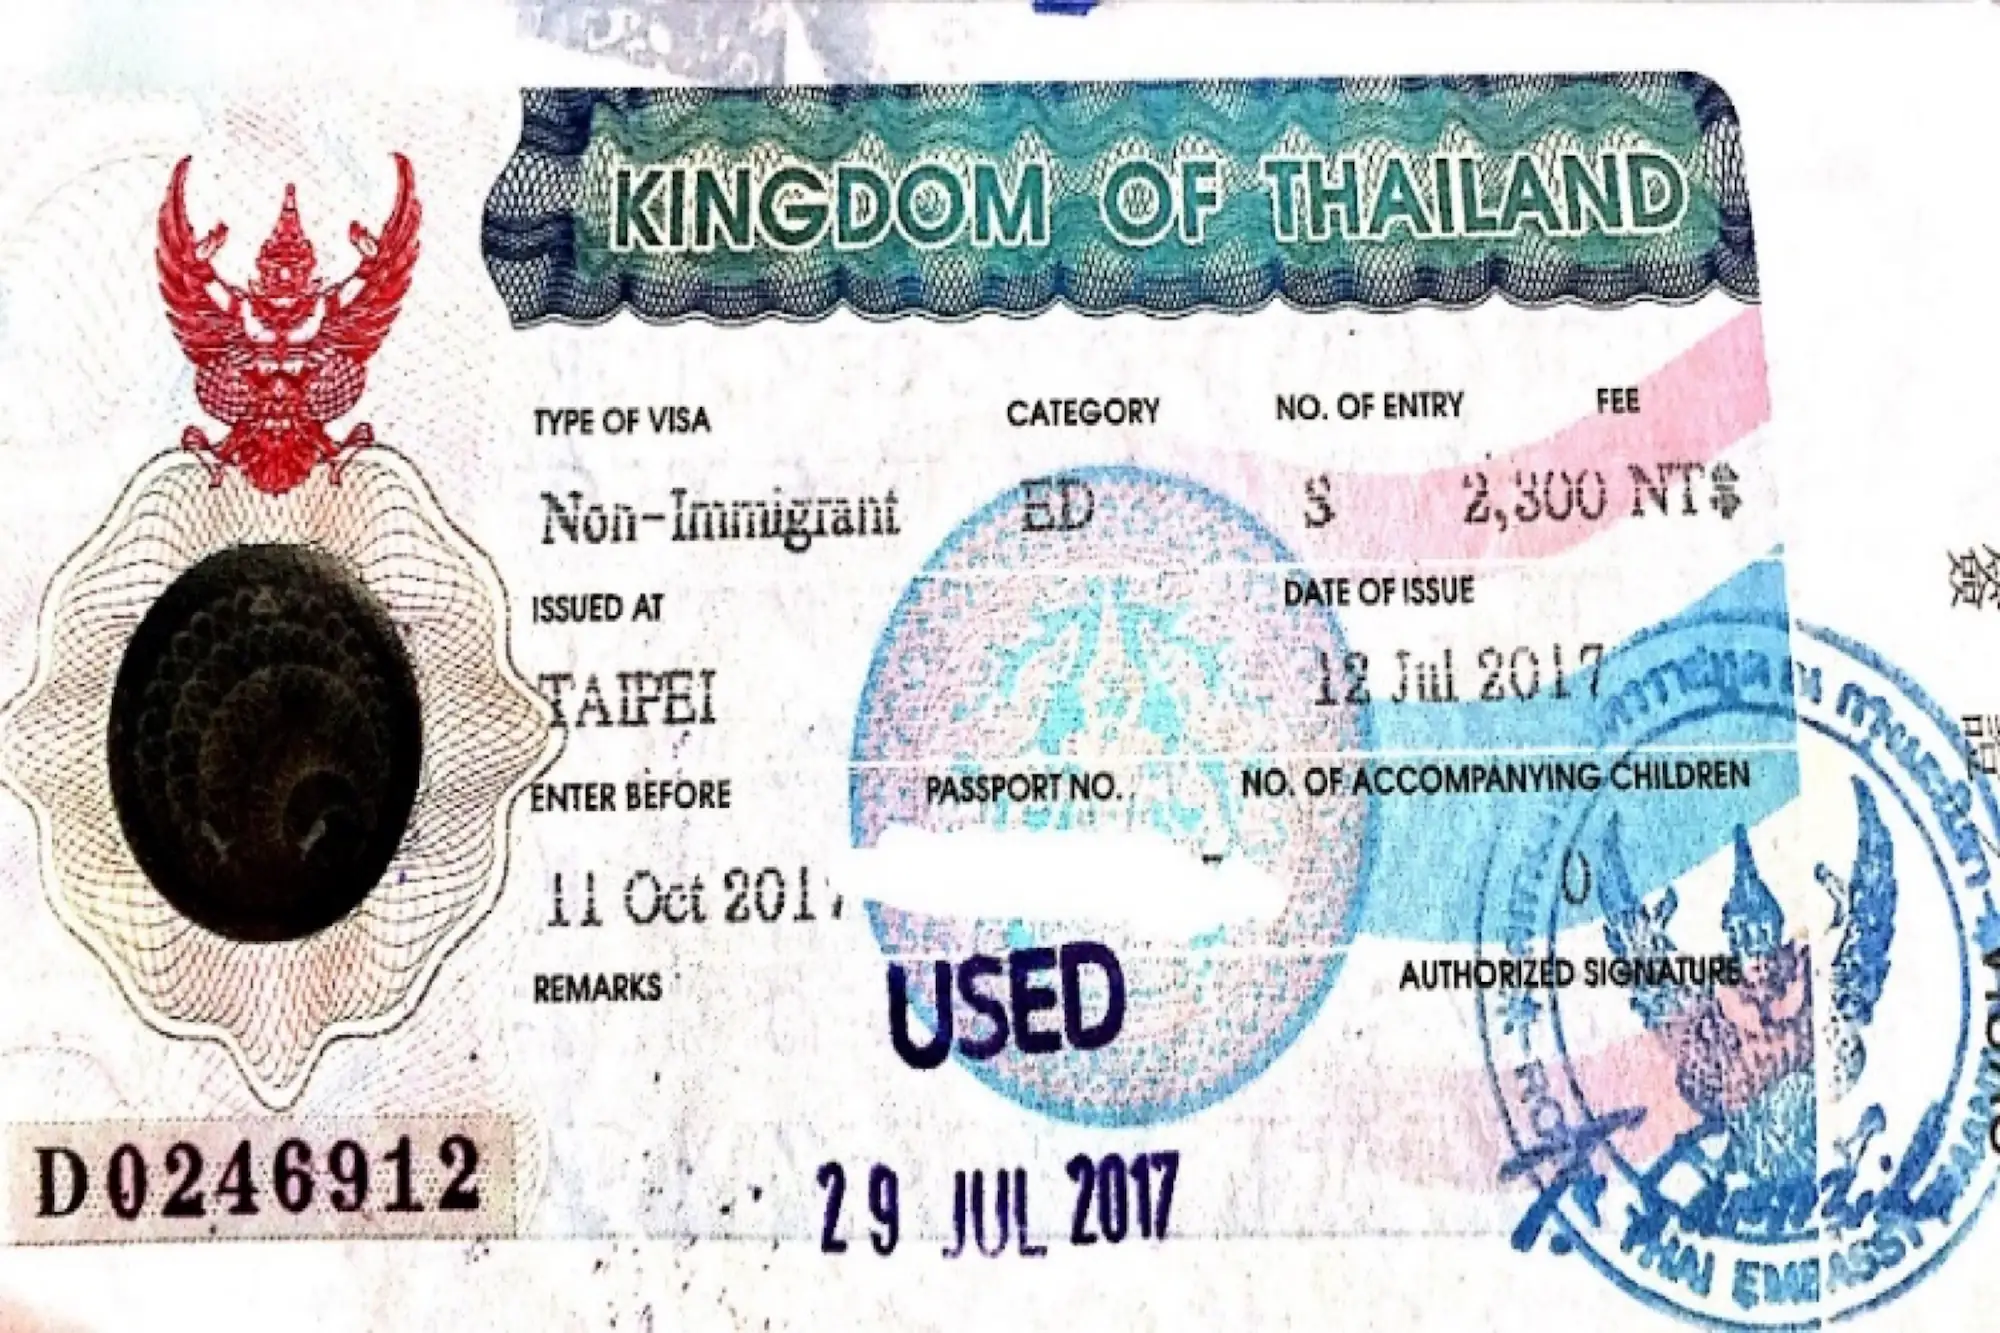 泰國 學生簽證 泰國經濟貿易辦事處 泰國大學 交換 Non-immigrant-ED 泰國學生簽證 申請 Non-immigrant-ED